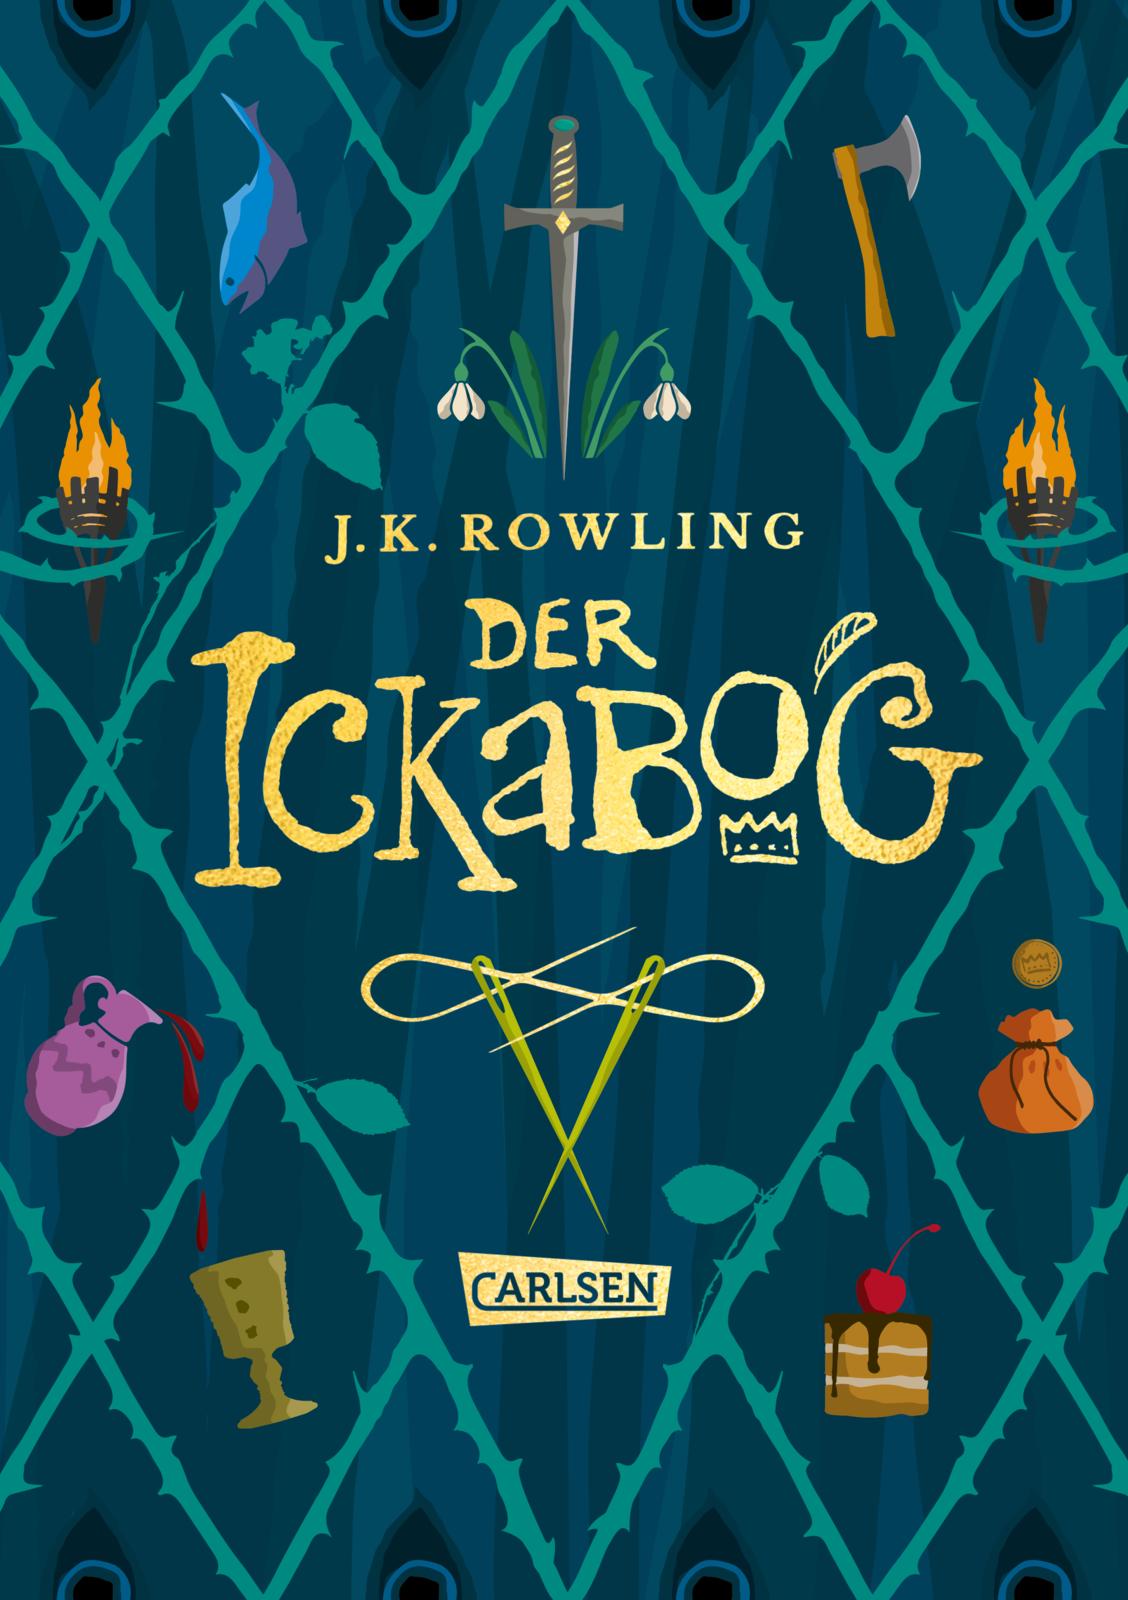 J.K. Rowling setzt auf Kinderkunst